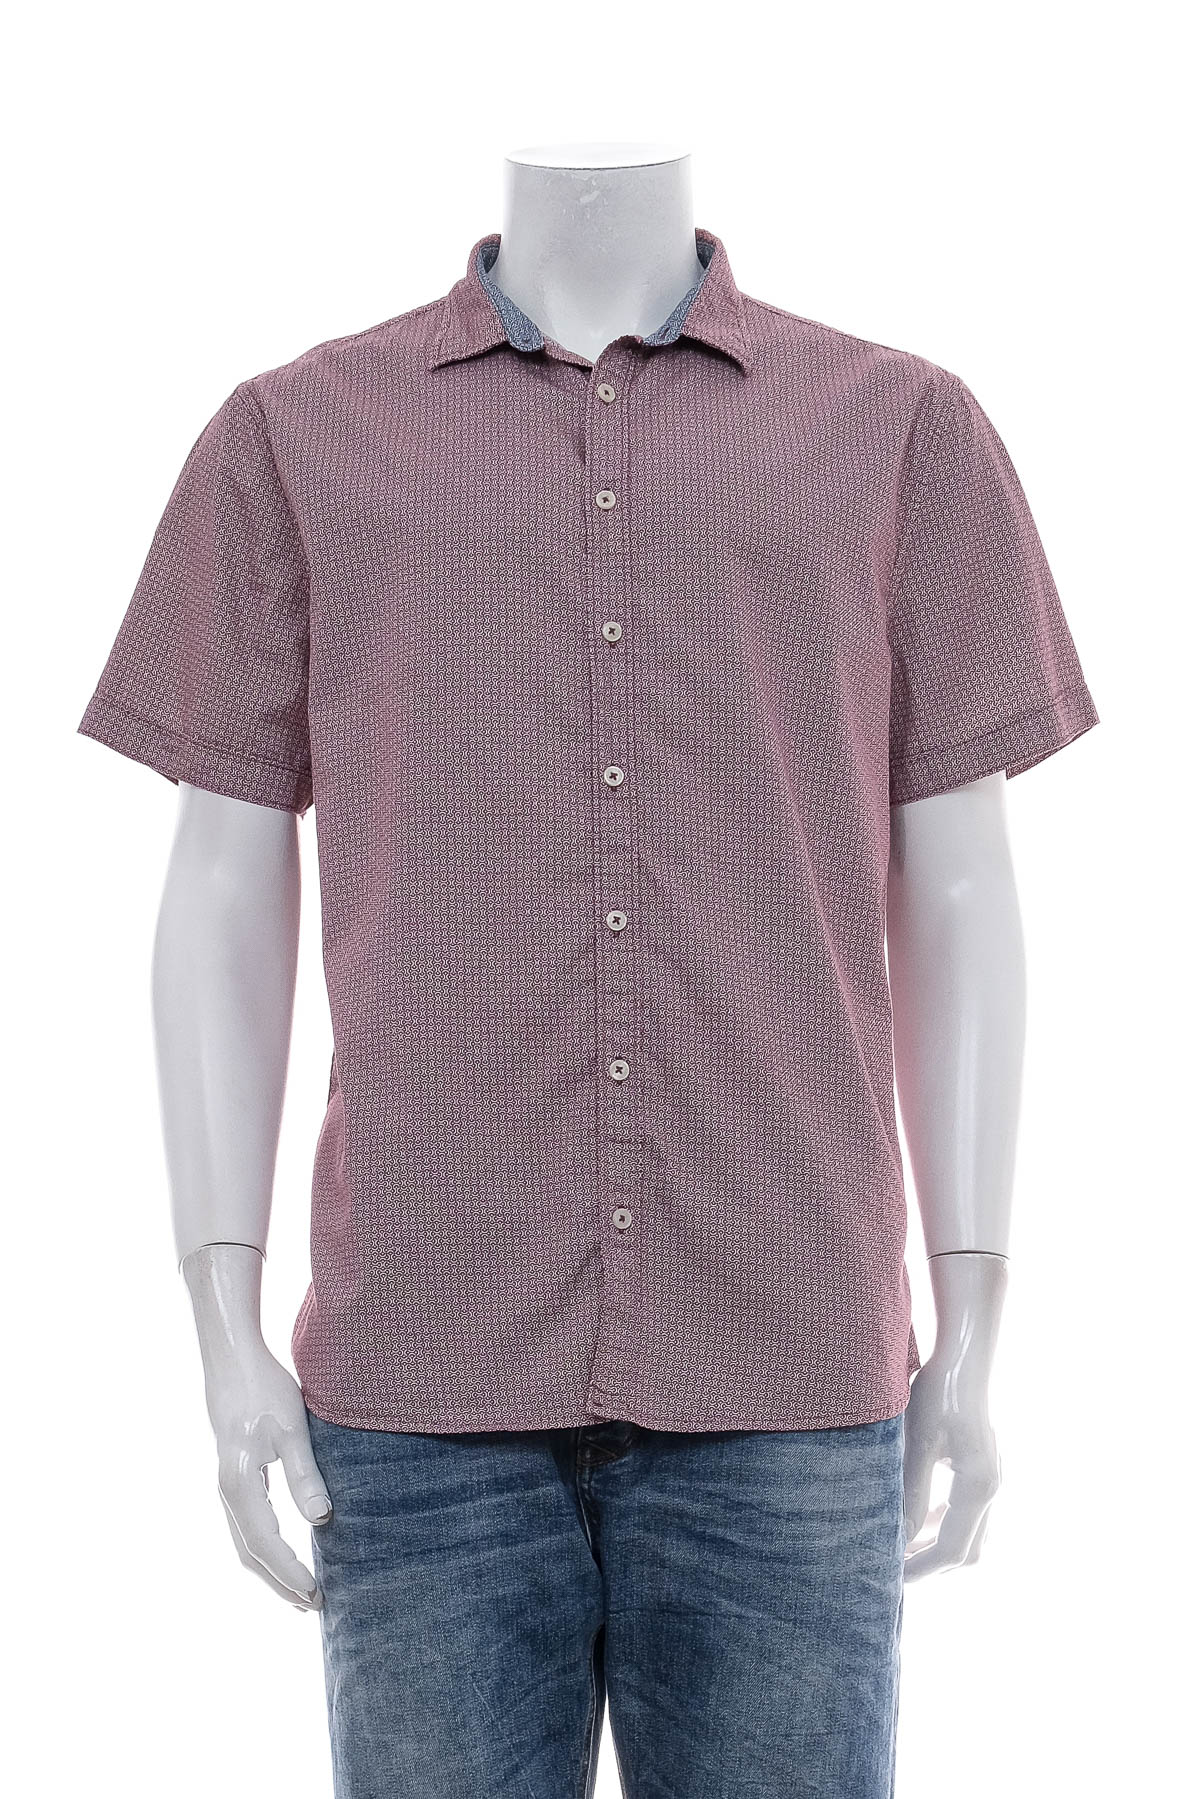 Ανδρικό πουκάμισο - UNDER ARMOUR - 0